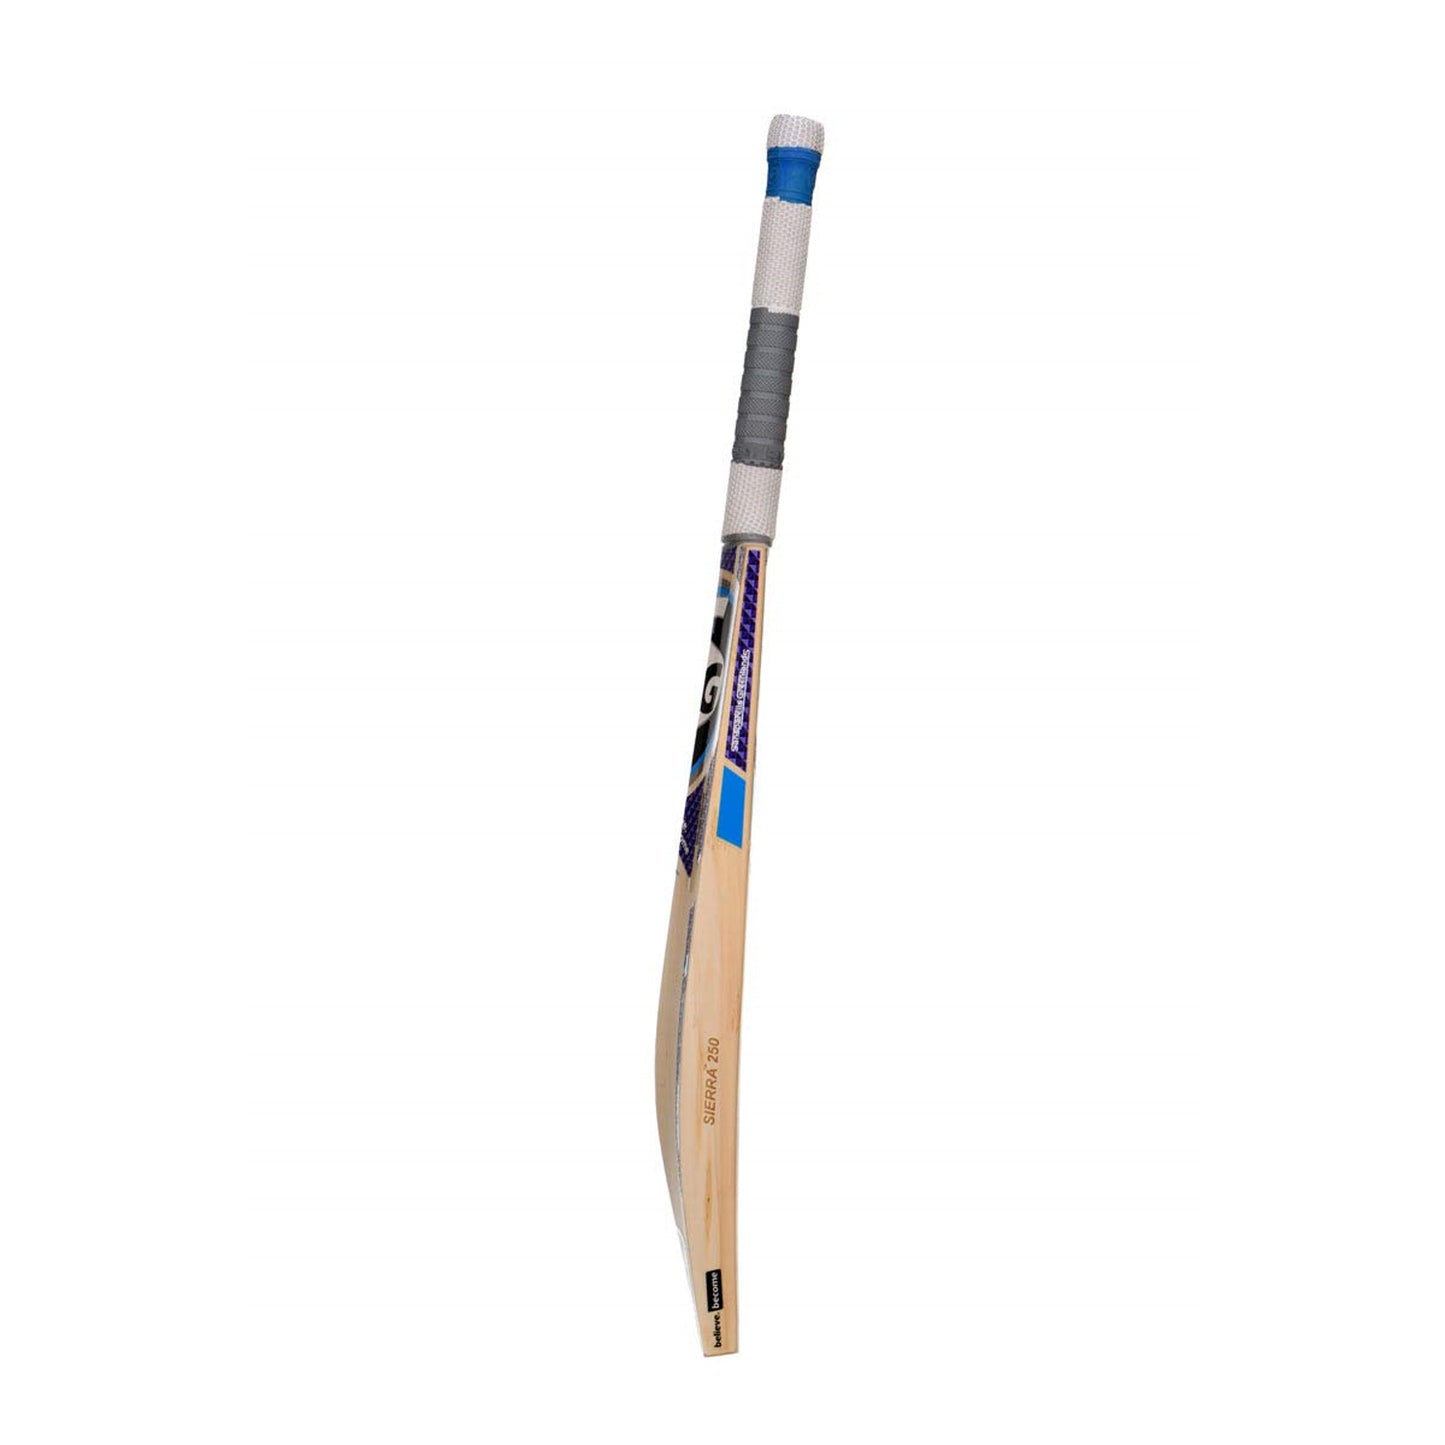 SG Sierra 250 English Willow Cricket Bat - Best Price online Prokicksports.com